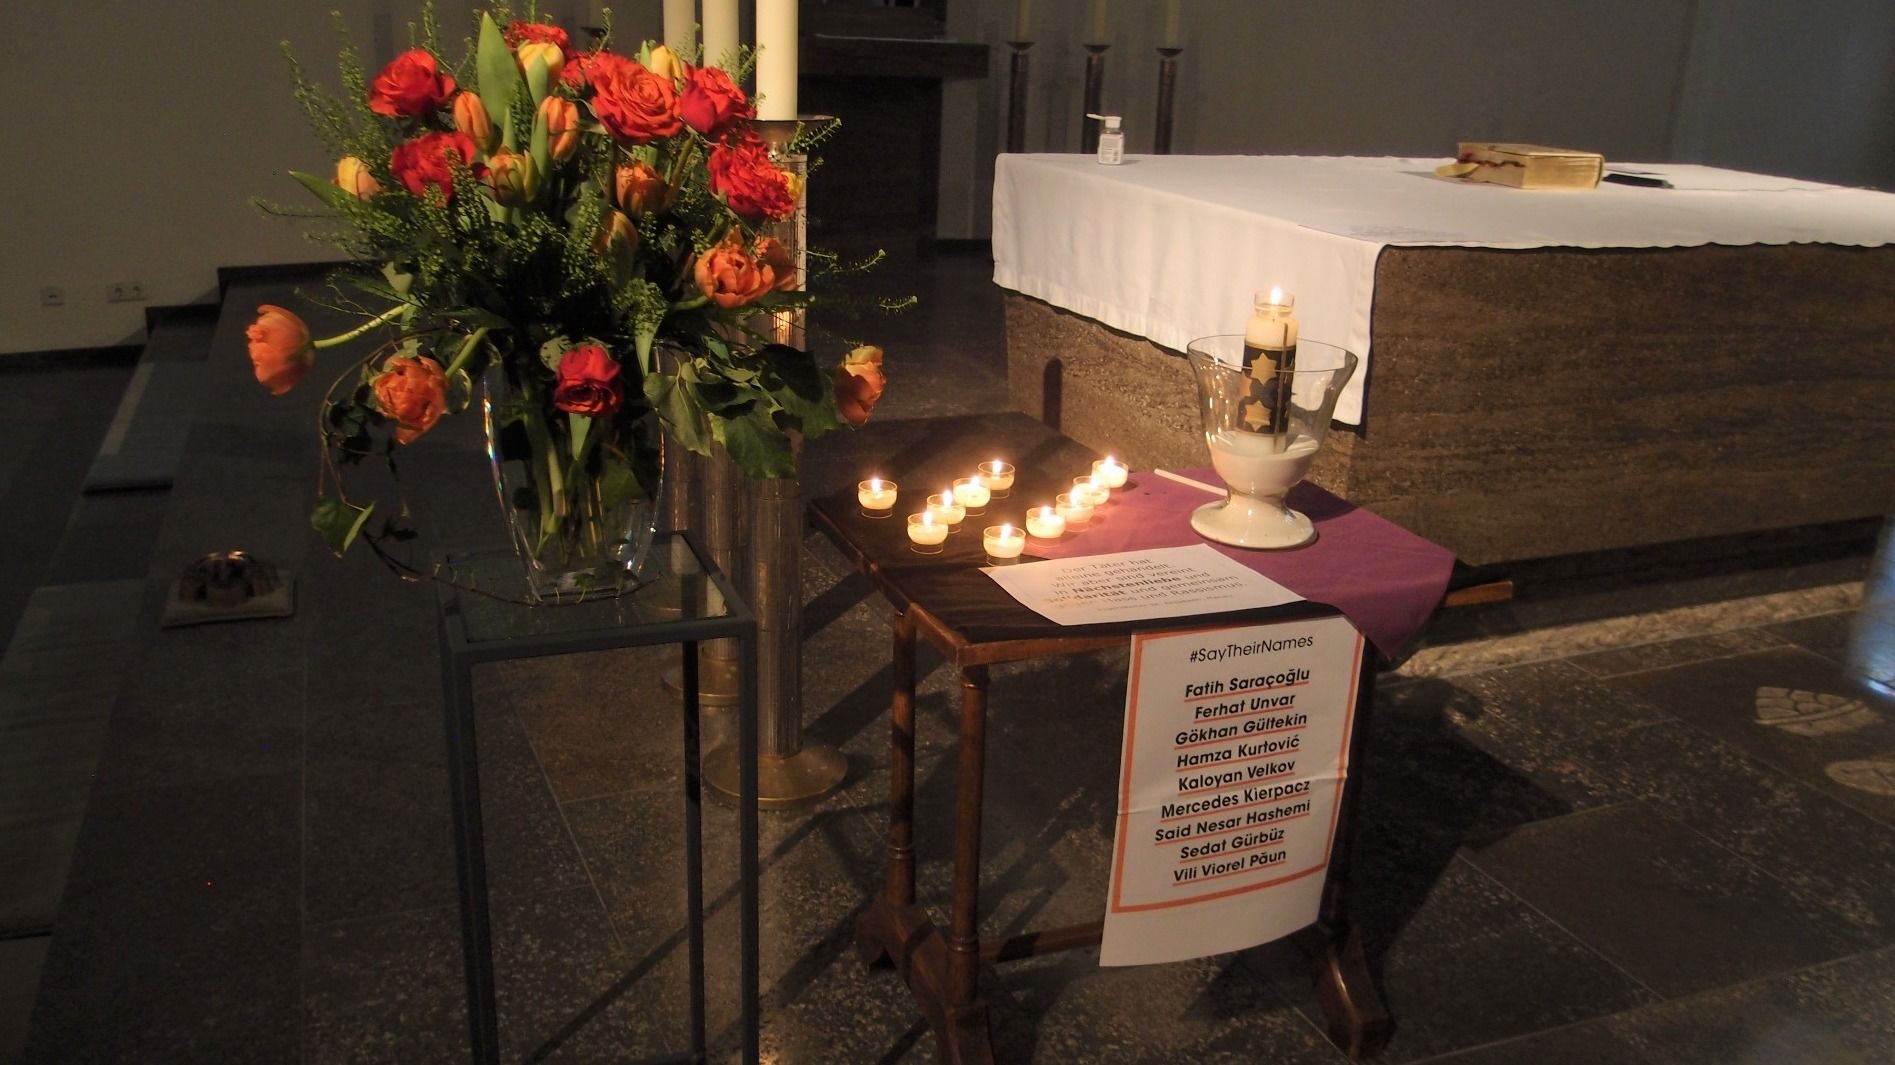 Vor vier Jahren: Terroranschlag in Hanau - Bischof Gerber ruft zum Einsatz für Würde jedes Menschen auf